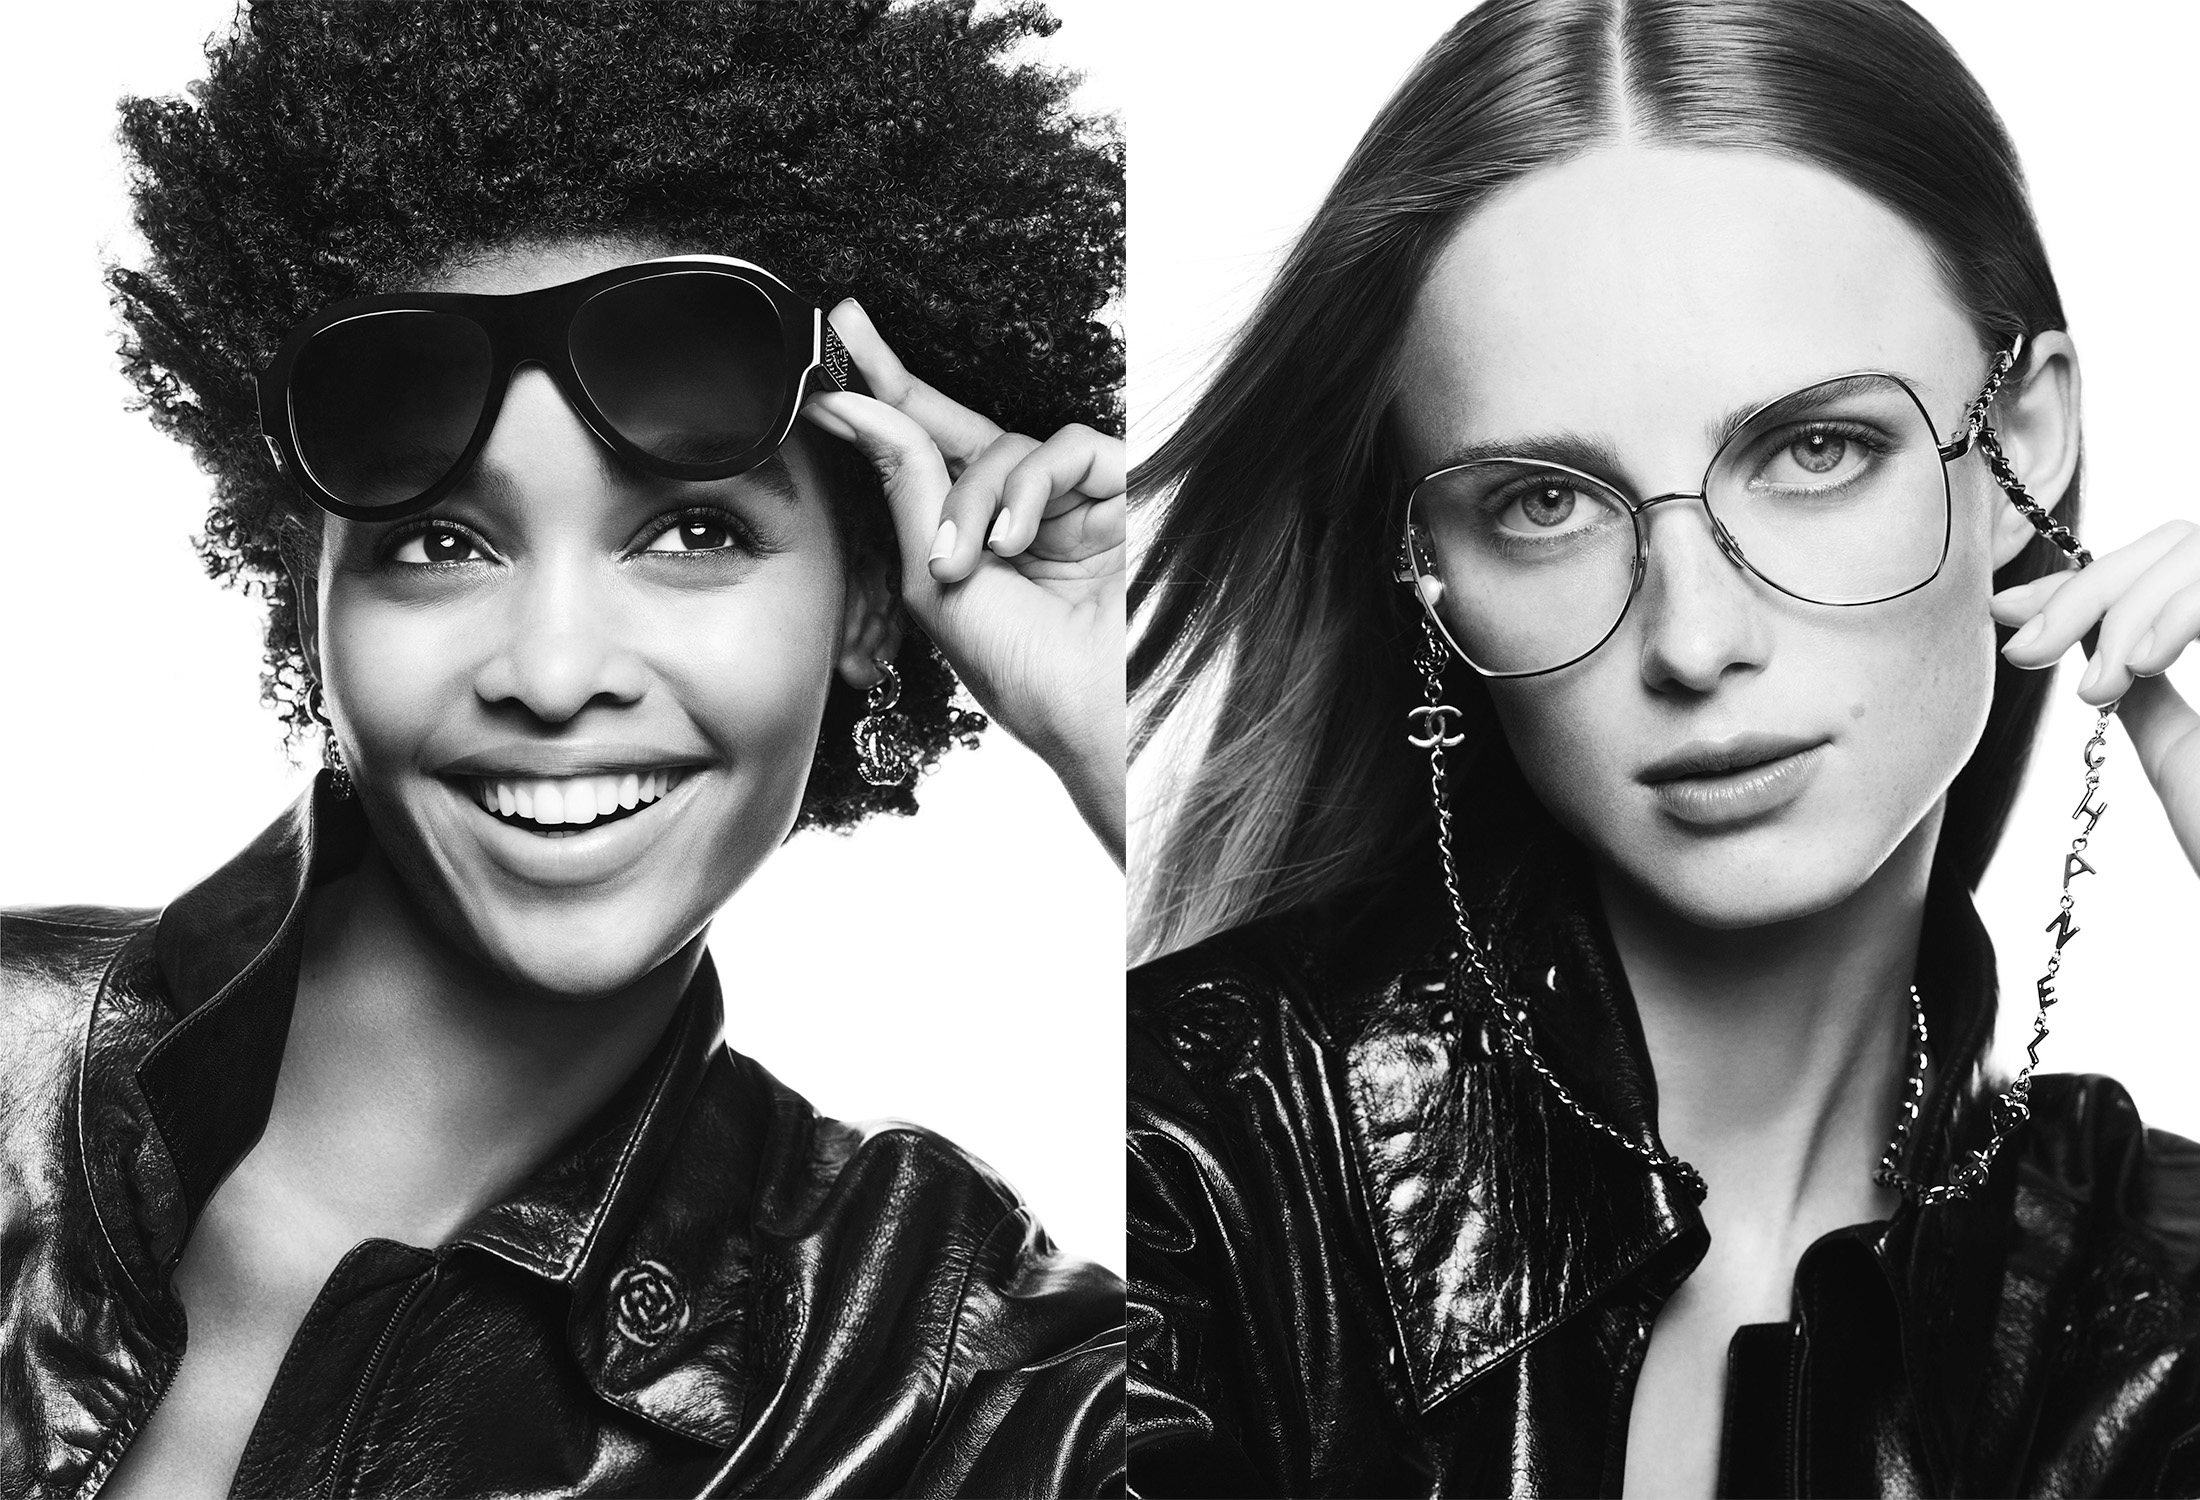 Chanel 2022 Eyewear Ad Campaign